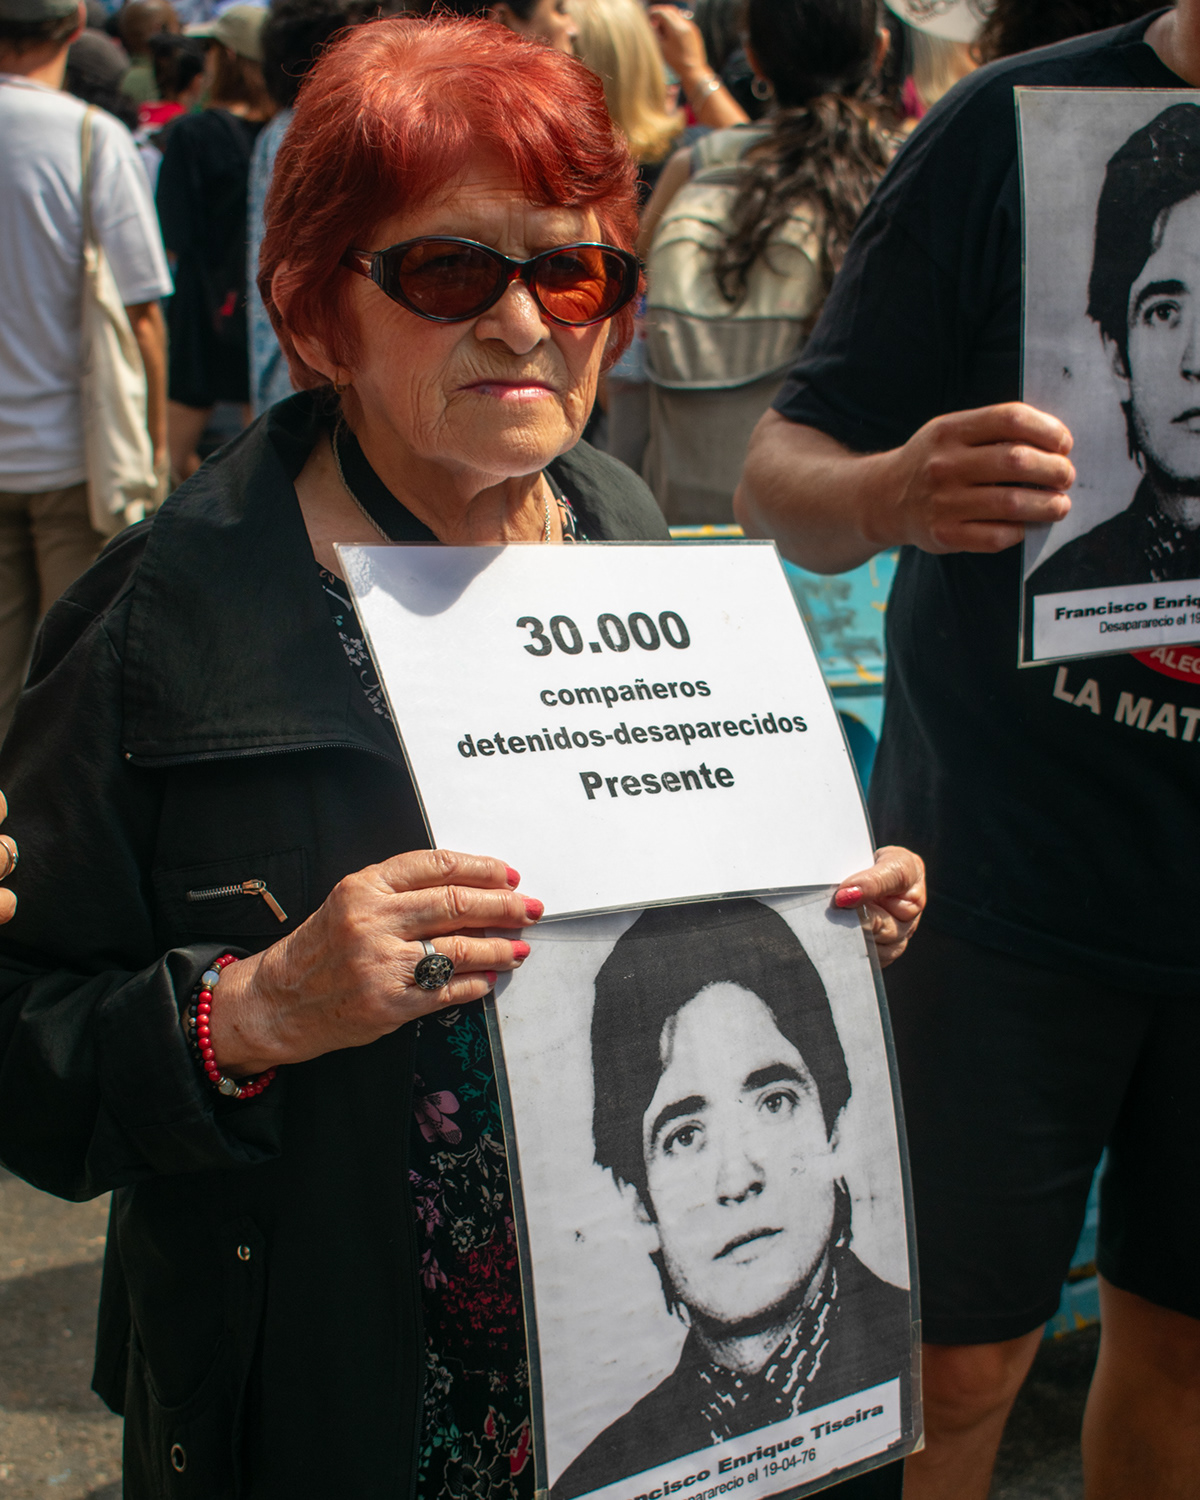 Fotografia marcha argentina 24demarzo Derechos humanos madres de plaza de mayo